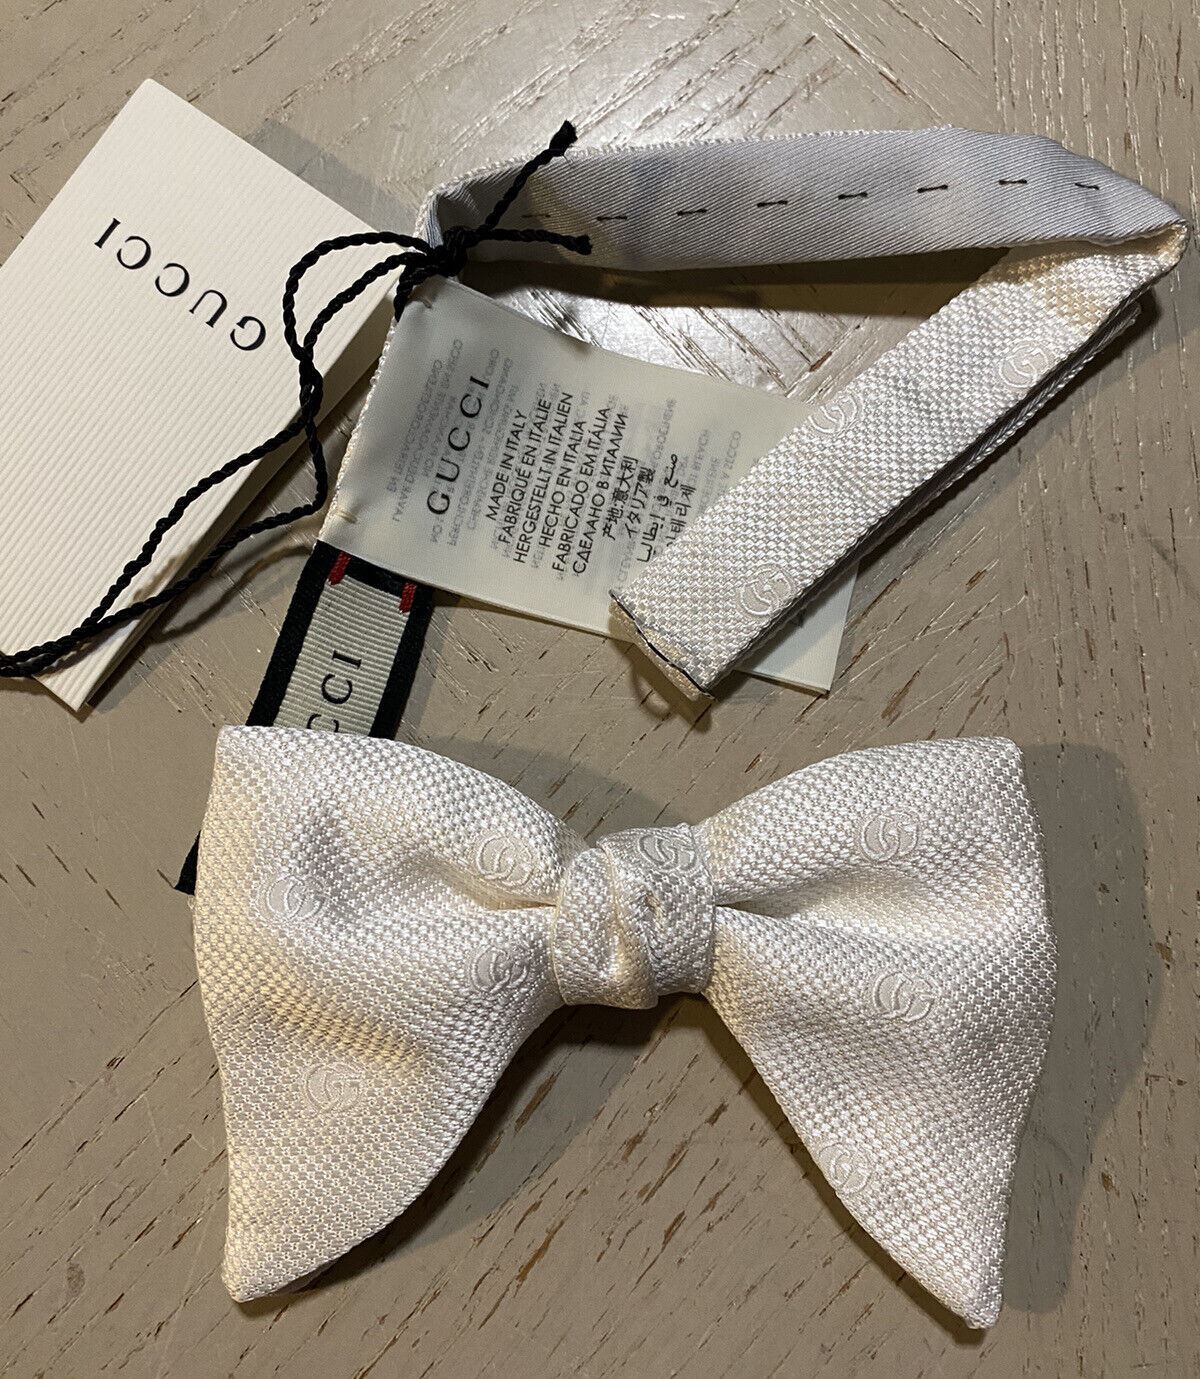 Новый шелковый галстук-бабочка Gucci с монограммой GG, сделанный в Италии